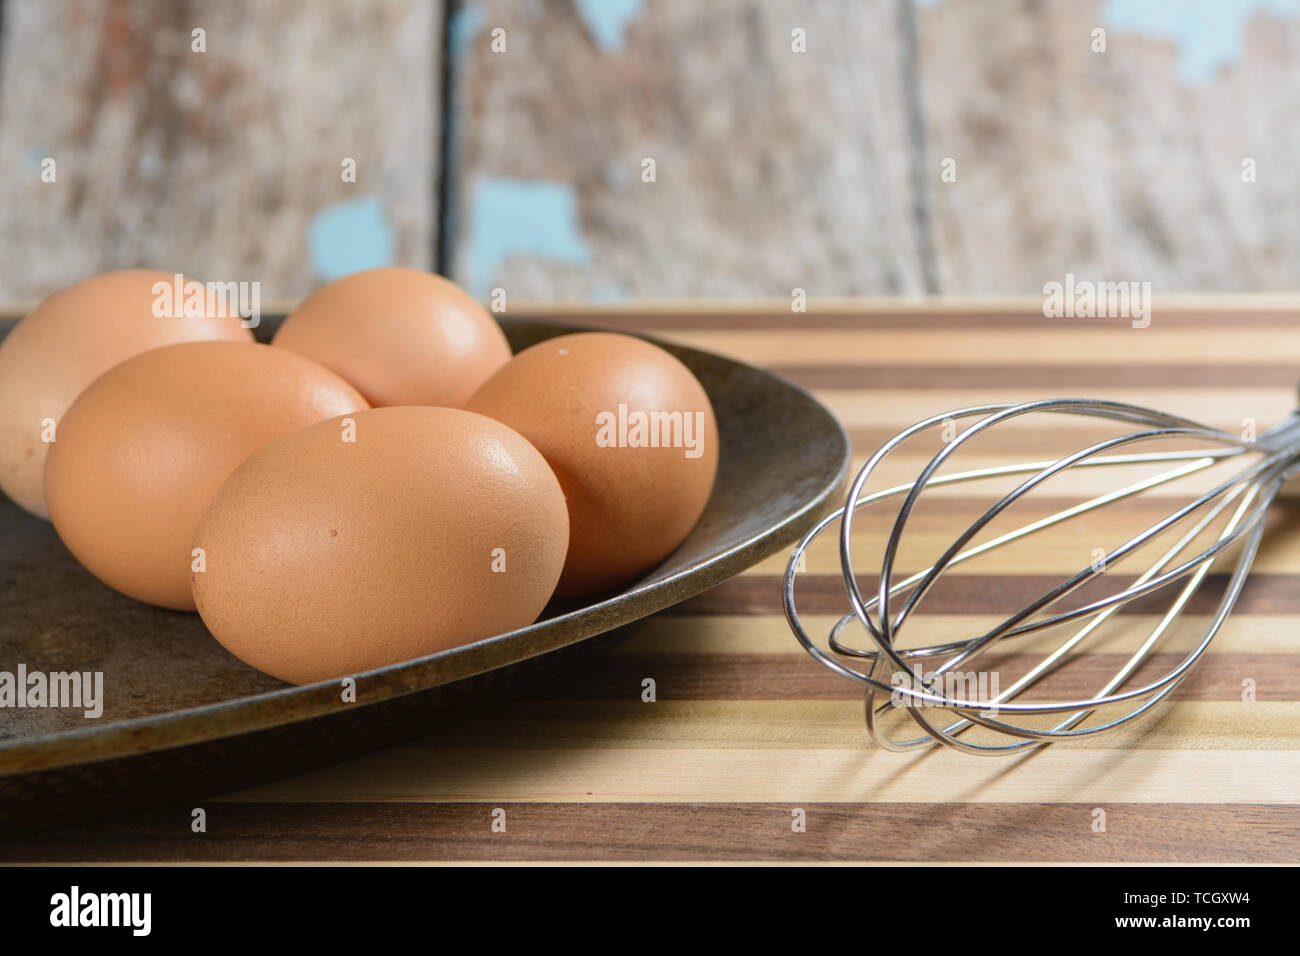 Una placa de metal con rústicos sixs huevos marrón con una batidora, y la  tabla de cortar Fotografía de stock - Alamy